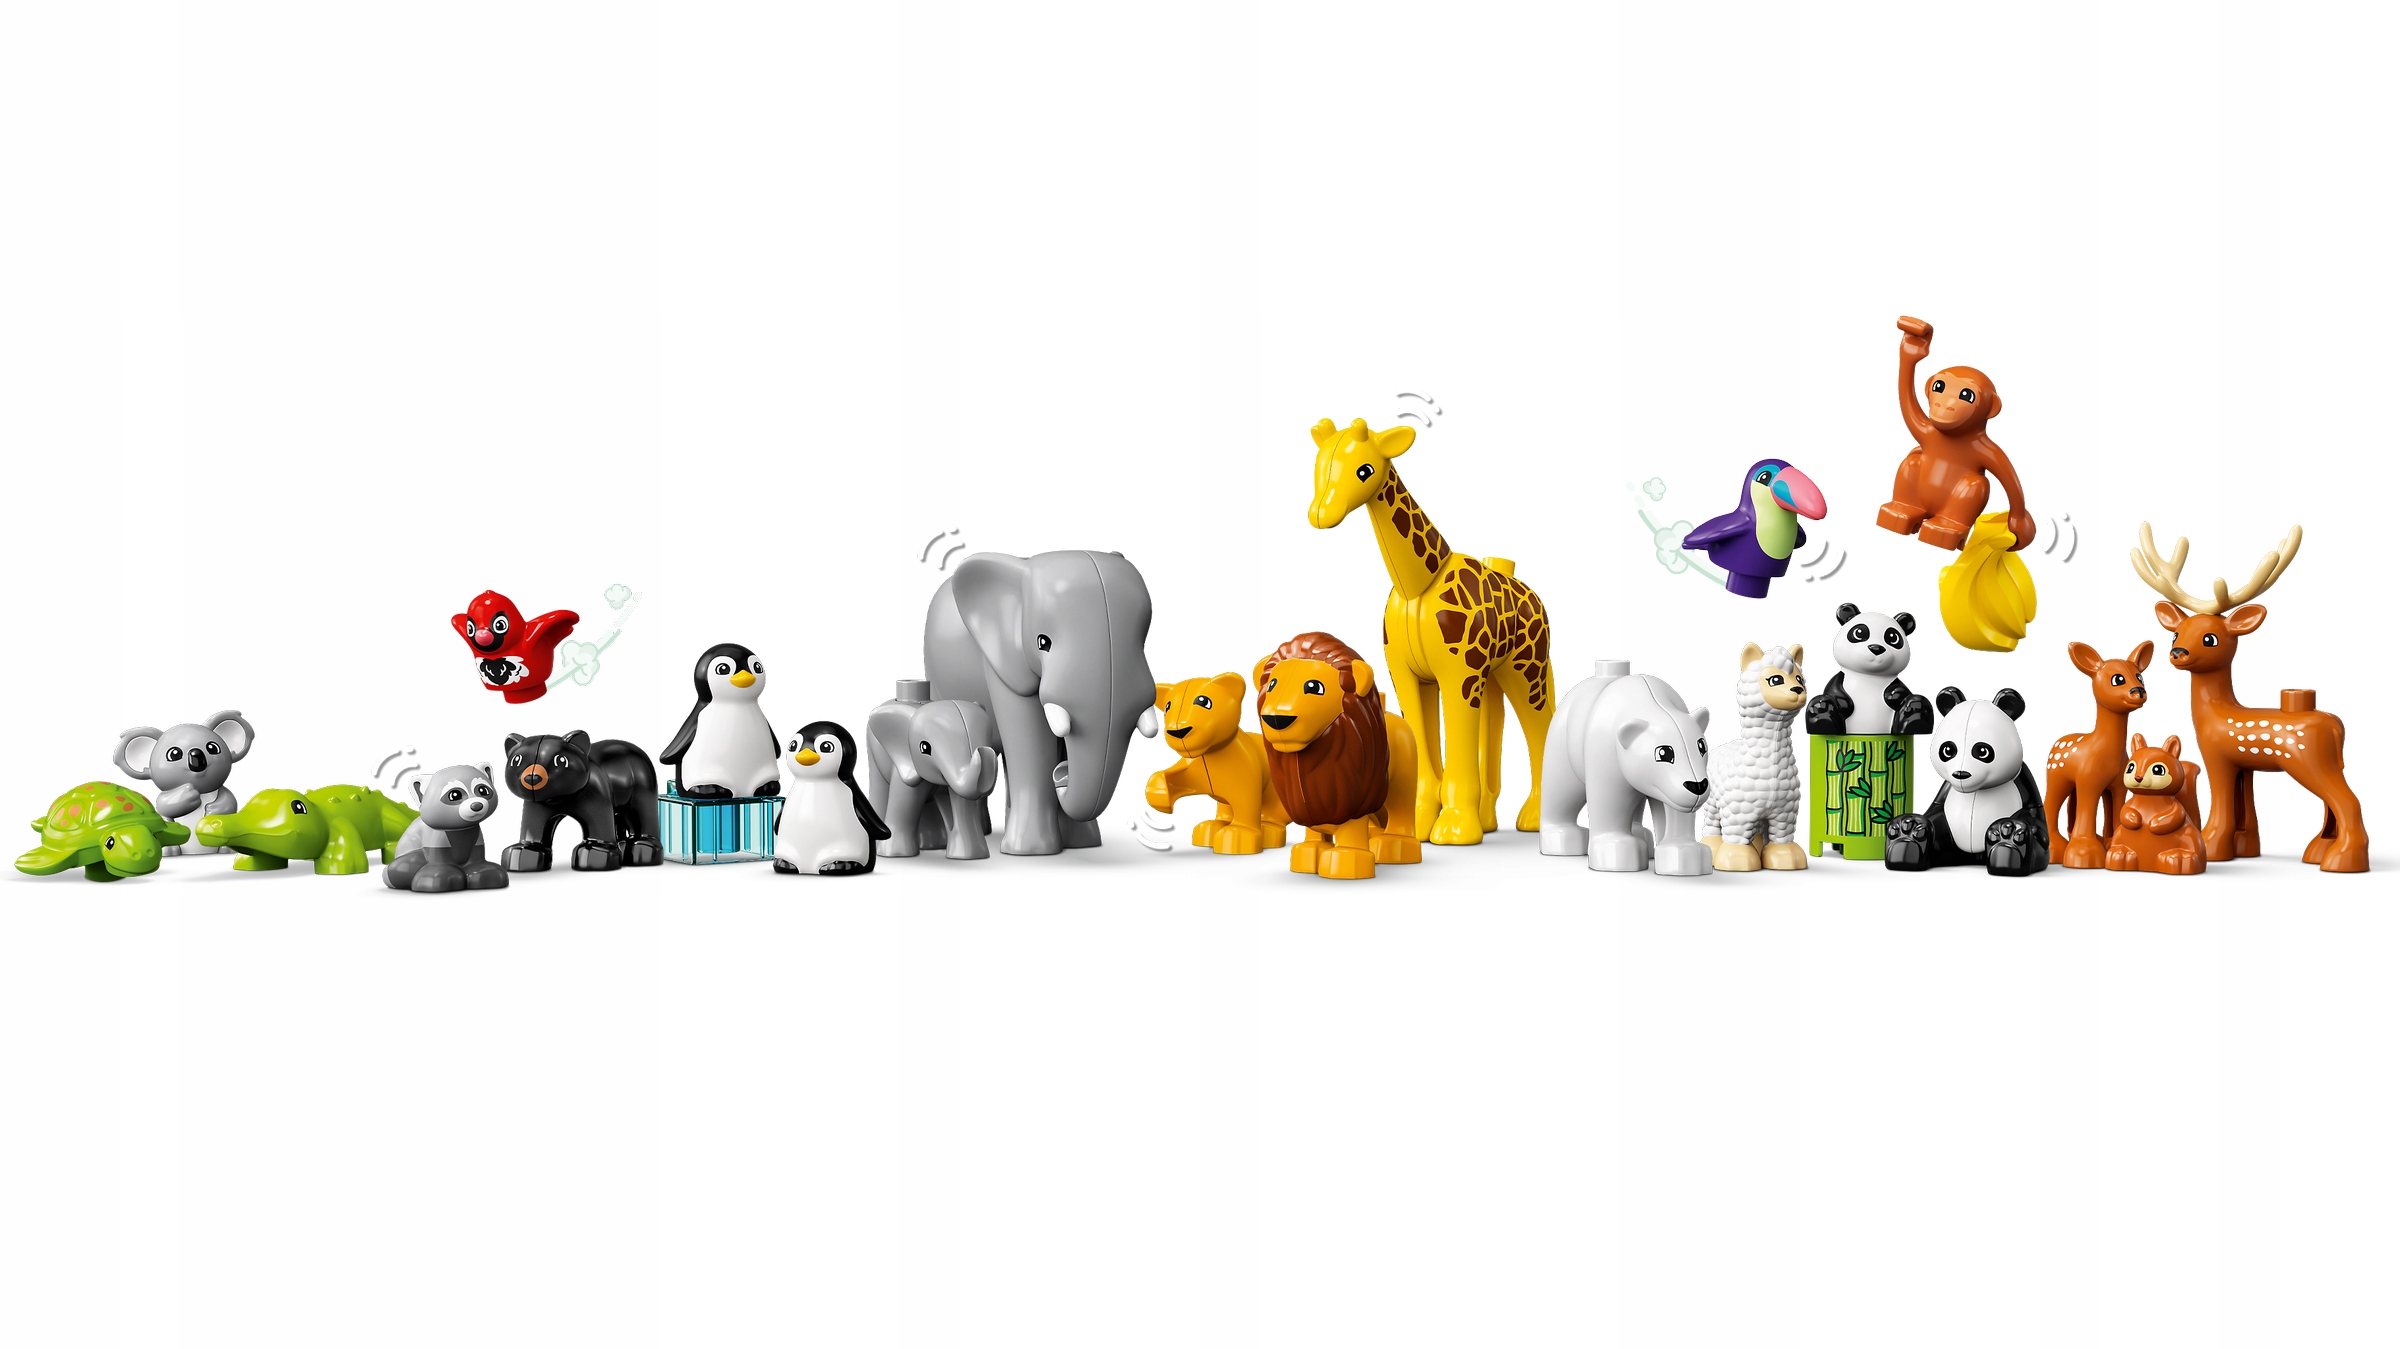 Конструктор LEGO DUPLO 10975 Дикие животные мира